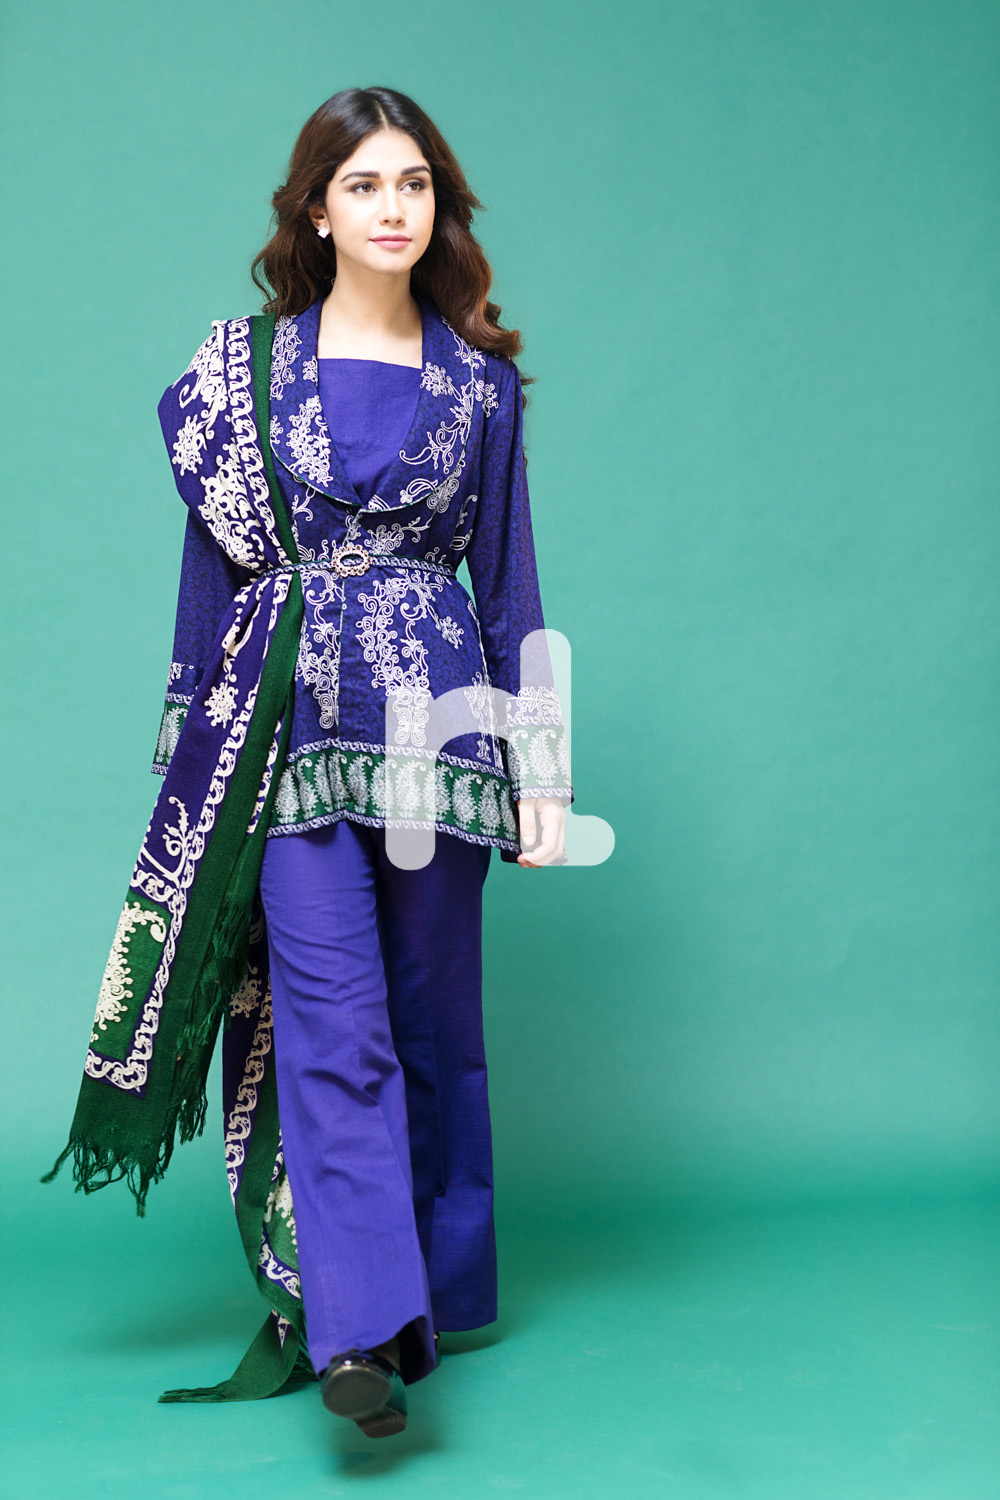 NL- Latest Pakistani Fashion